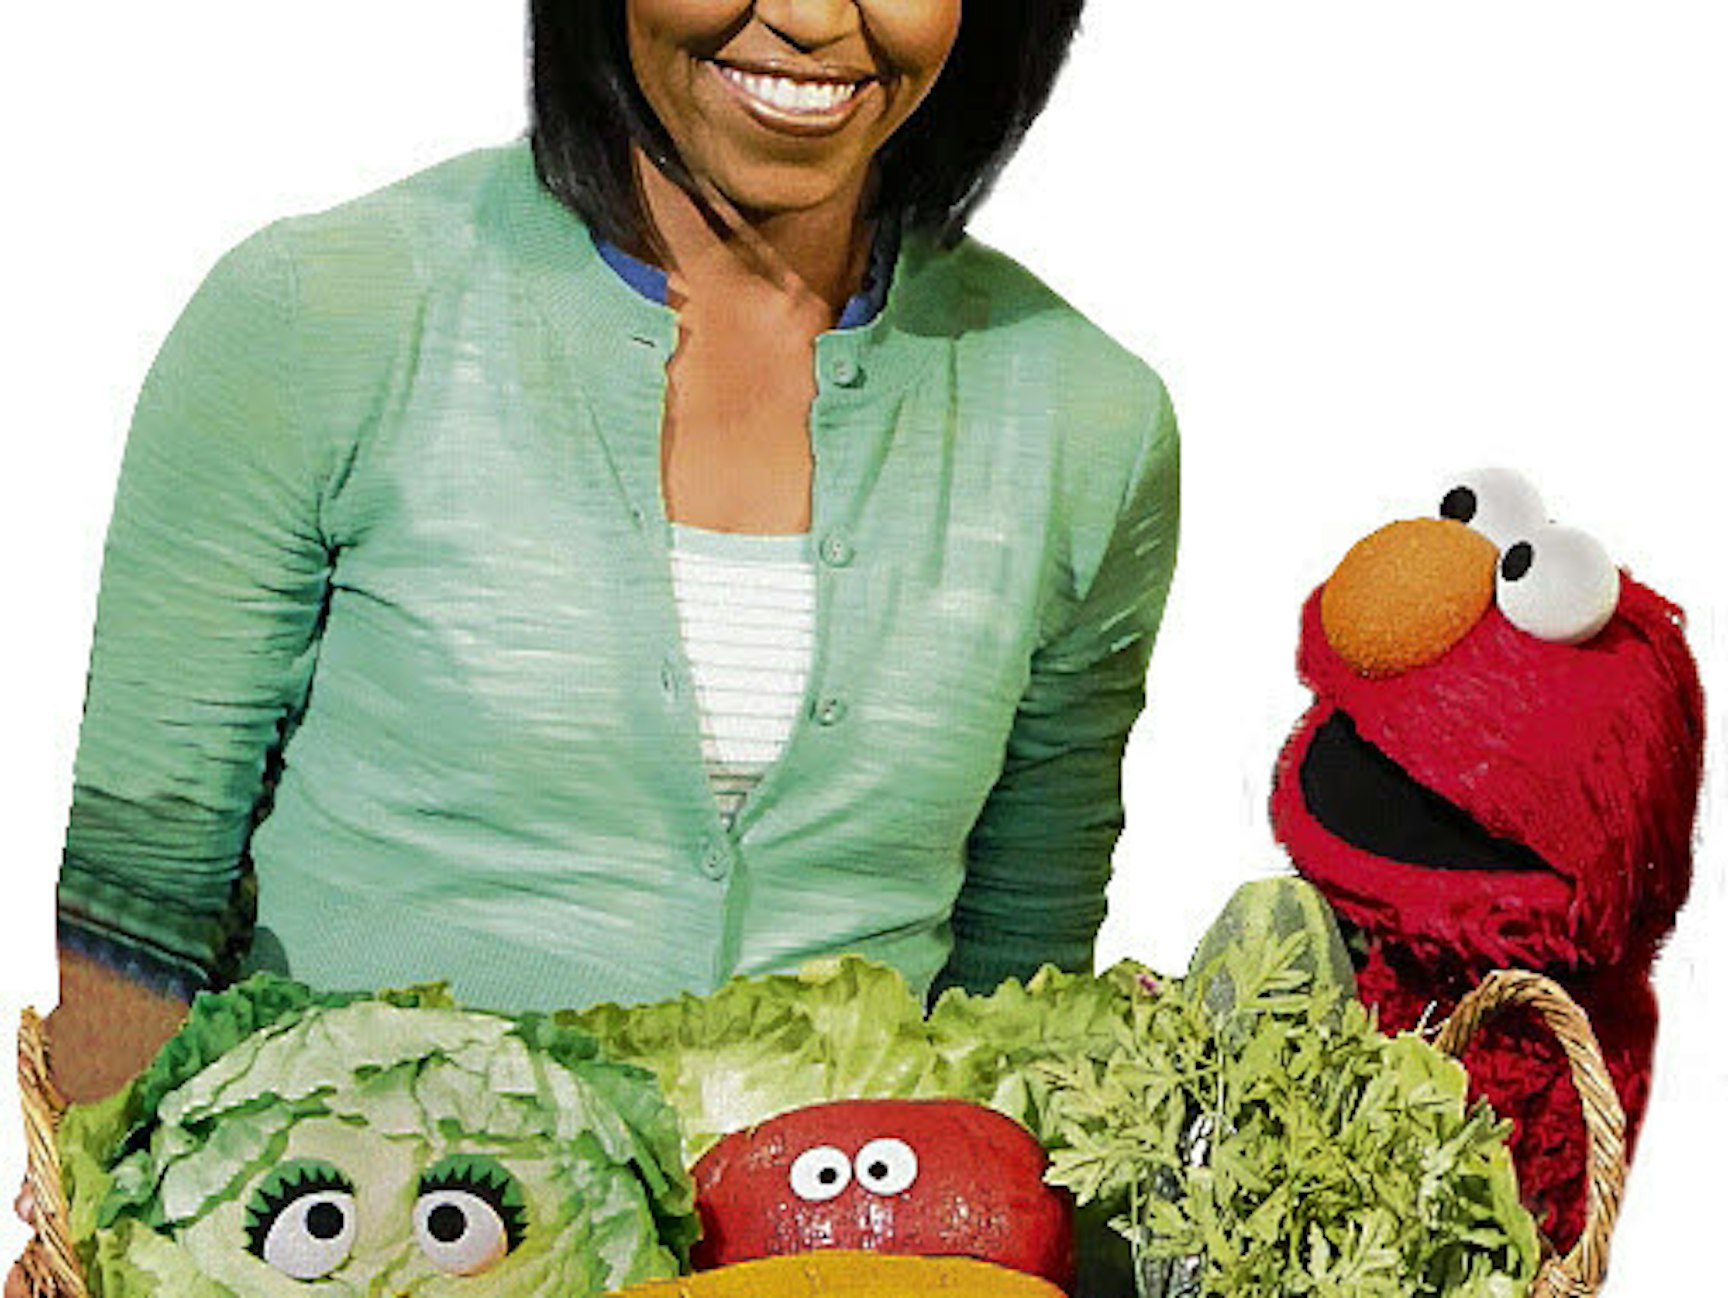 Die damalige First Lady der USA, Michelle Obama, war 2009 Gast in der Sesamstraße